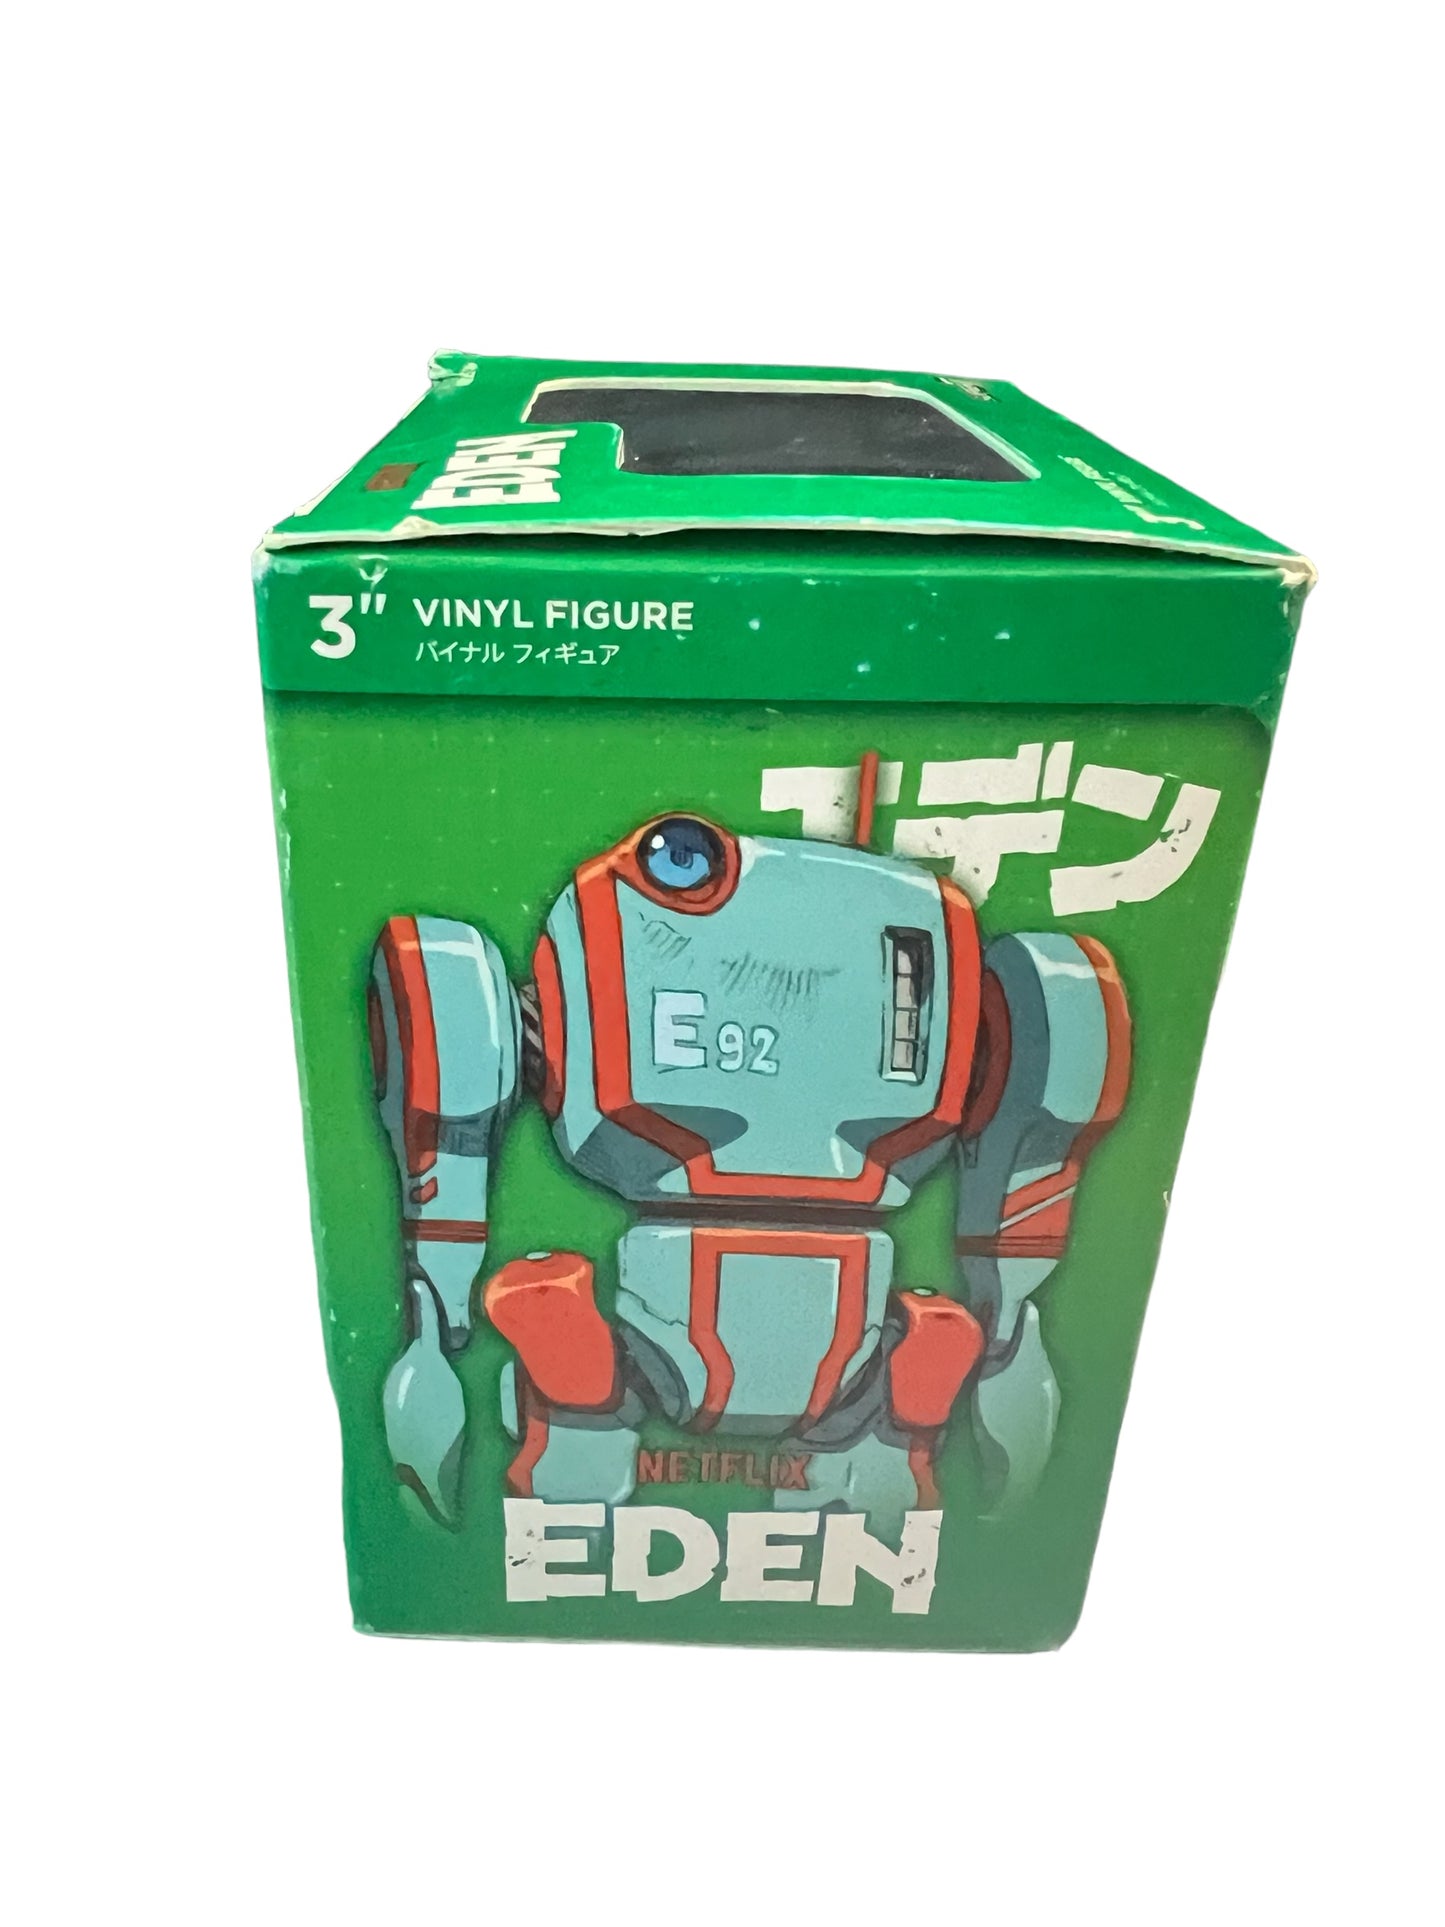 Super 7 Netflix Anime Eden Supervinyl Action Figure (3inch E-92), Multi-color